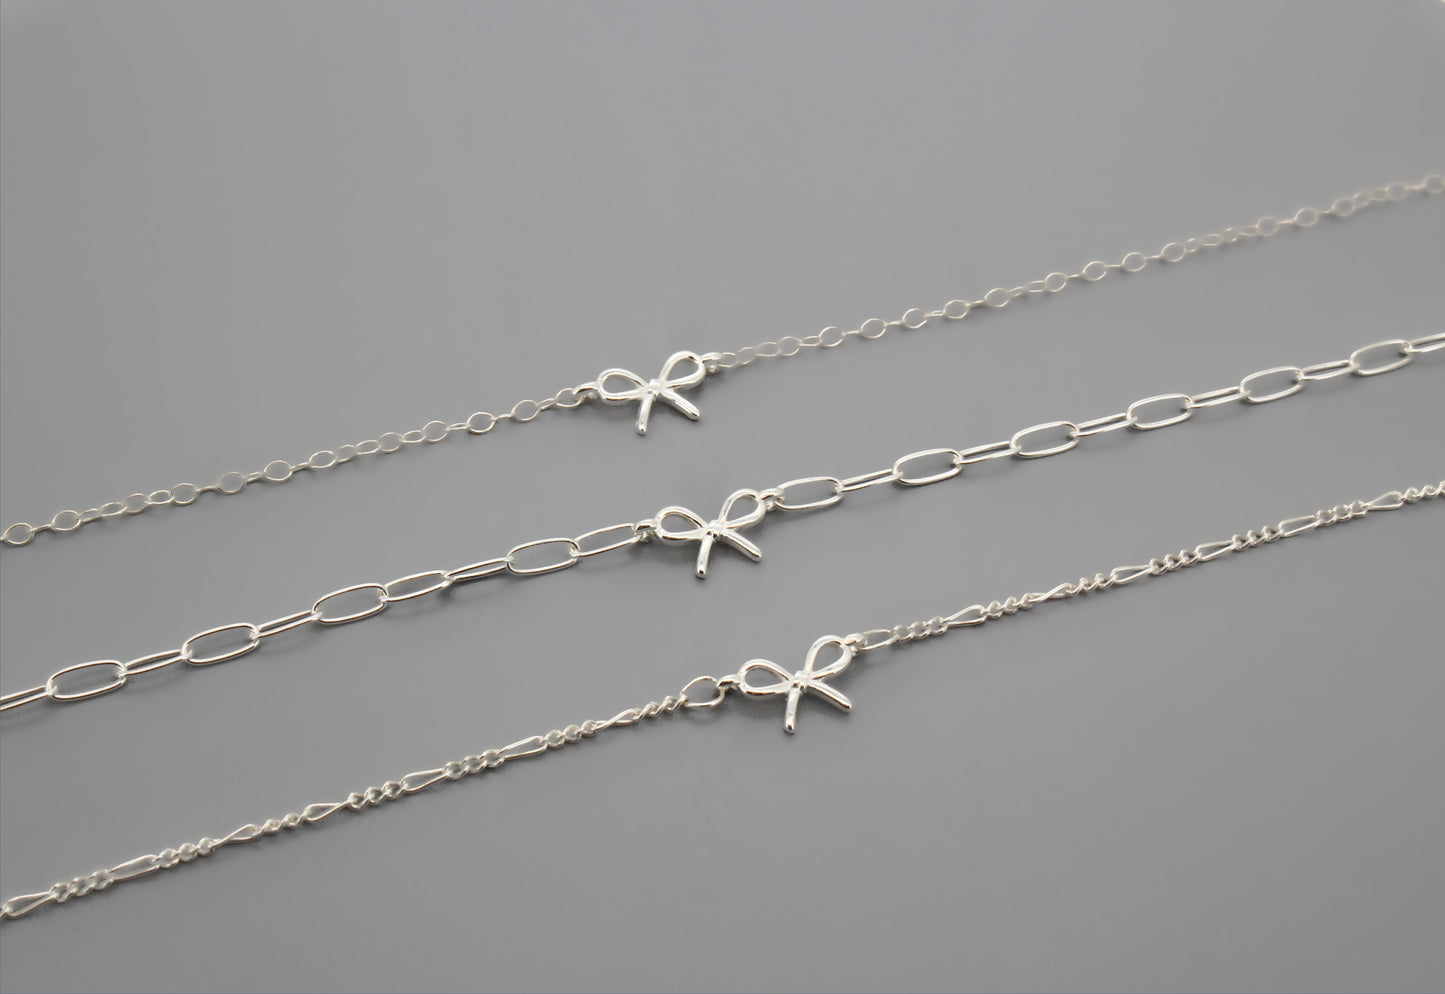 COQUETTE - Mini Bow Bracelet in 925 Sterling Silver · Ribbon Bow · Best Friend Bracelets · Bracelet for Women · Tie the Knot